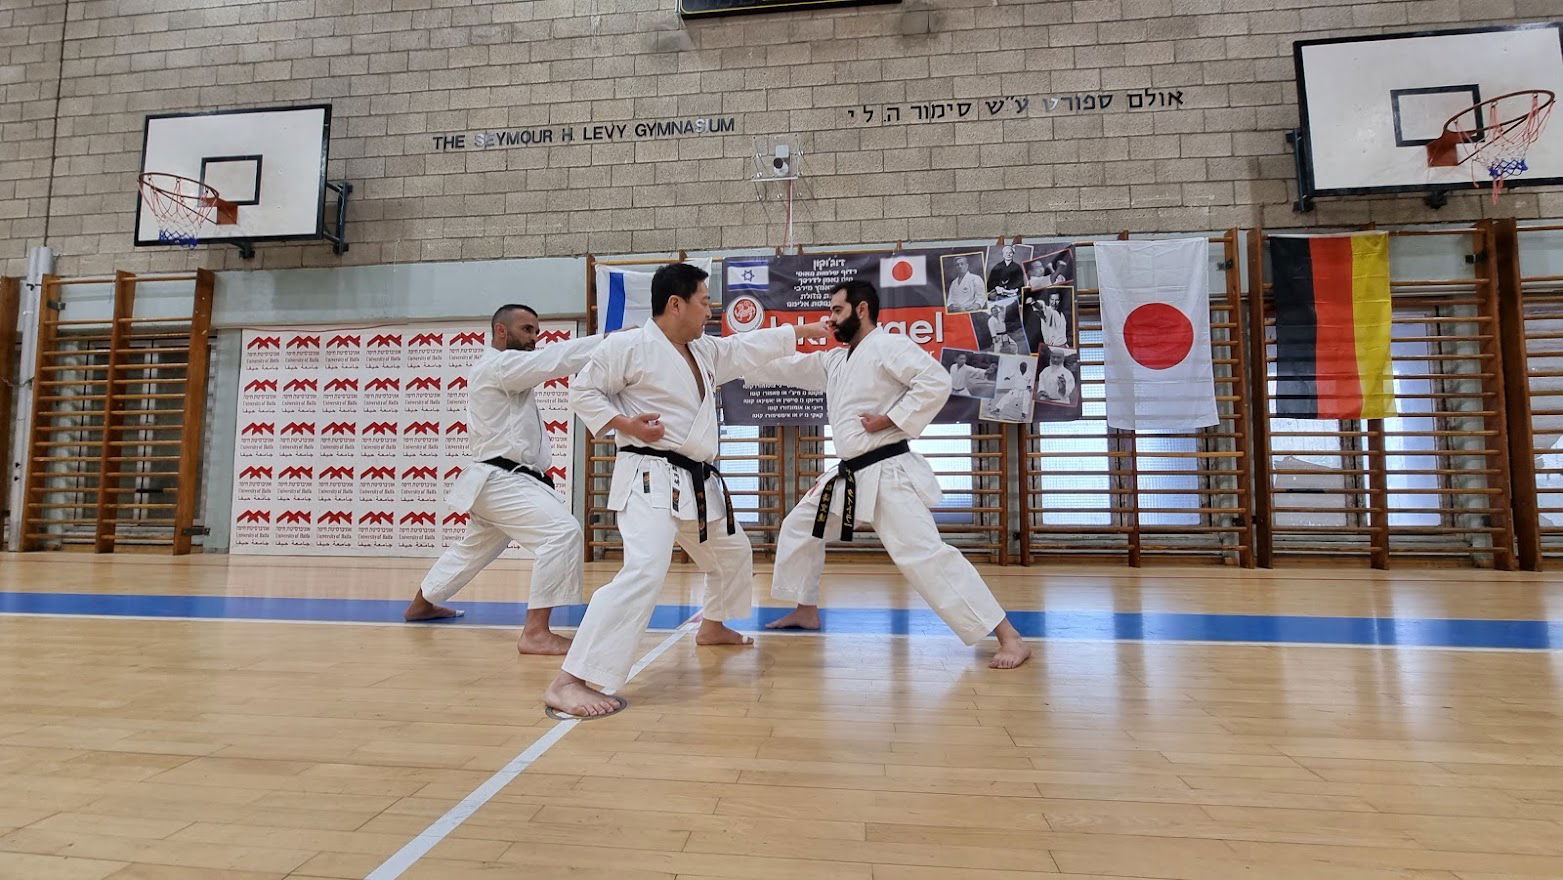 ISKF Israel - International Karate Saminar - Okazaki Shihan 2022